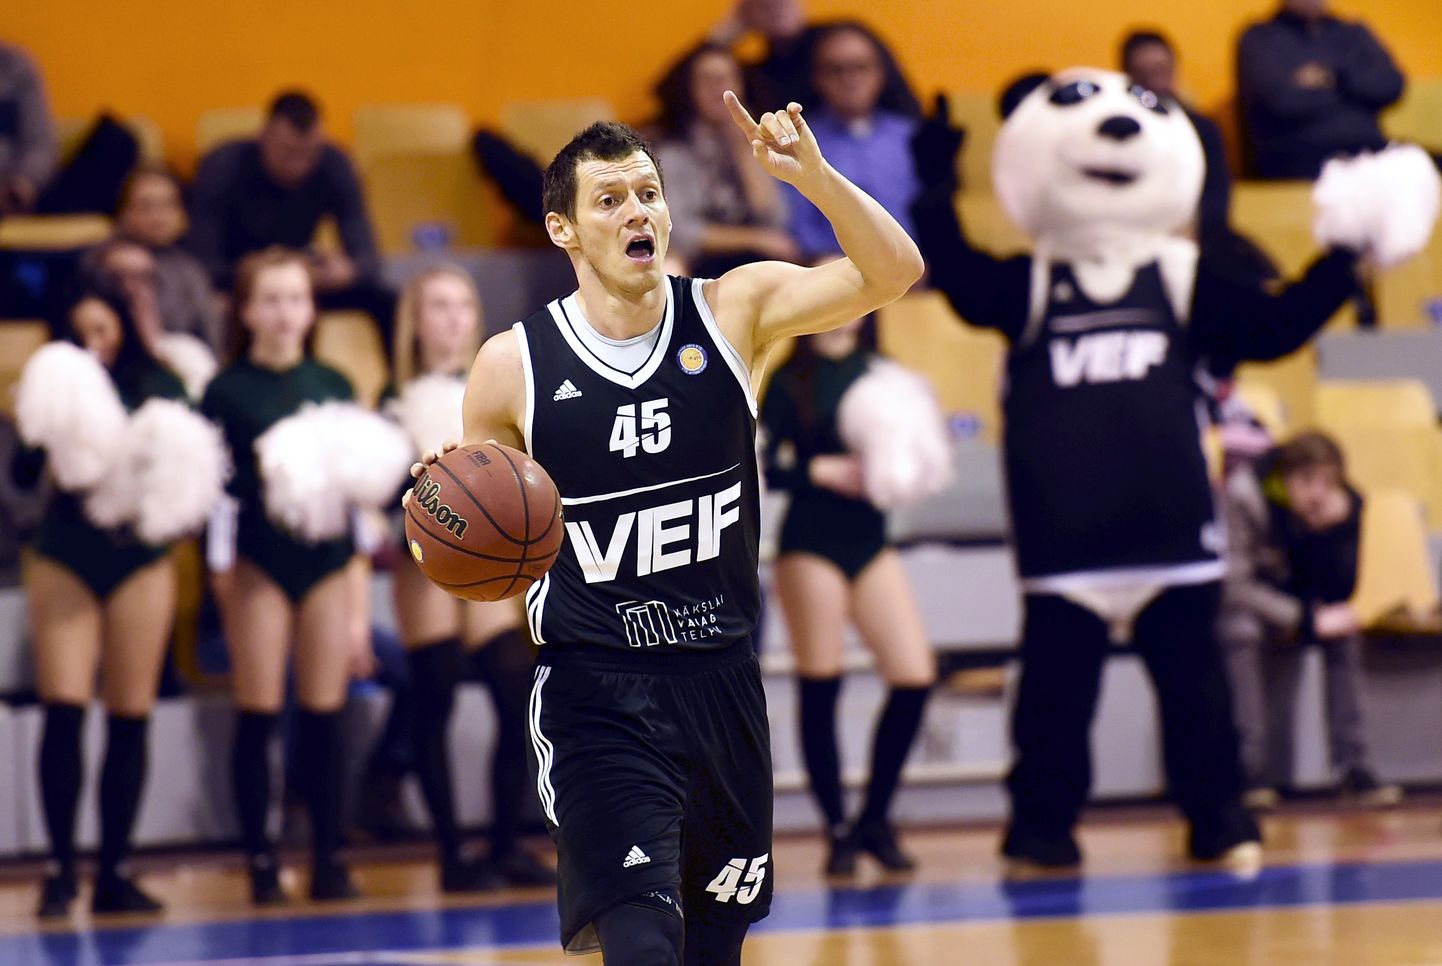 "VEF Rīga" spēlētājs Jānis Blūms (nr.45, melns) VTB Vienotās līgas spēlē basketbolā "Elektrum" Olimpiskajā centrā, kurā tiekas "VEF Rīga" un "Ņižņij Novgorod" komandas.